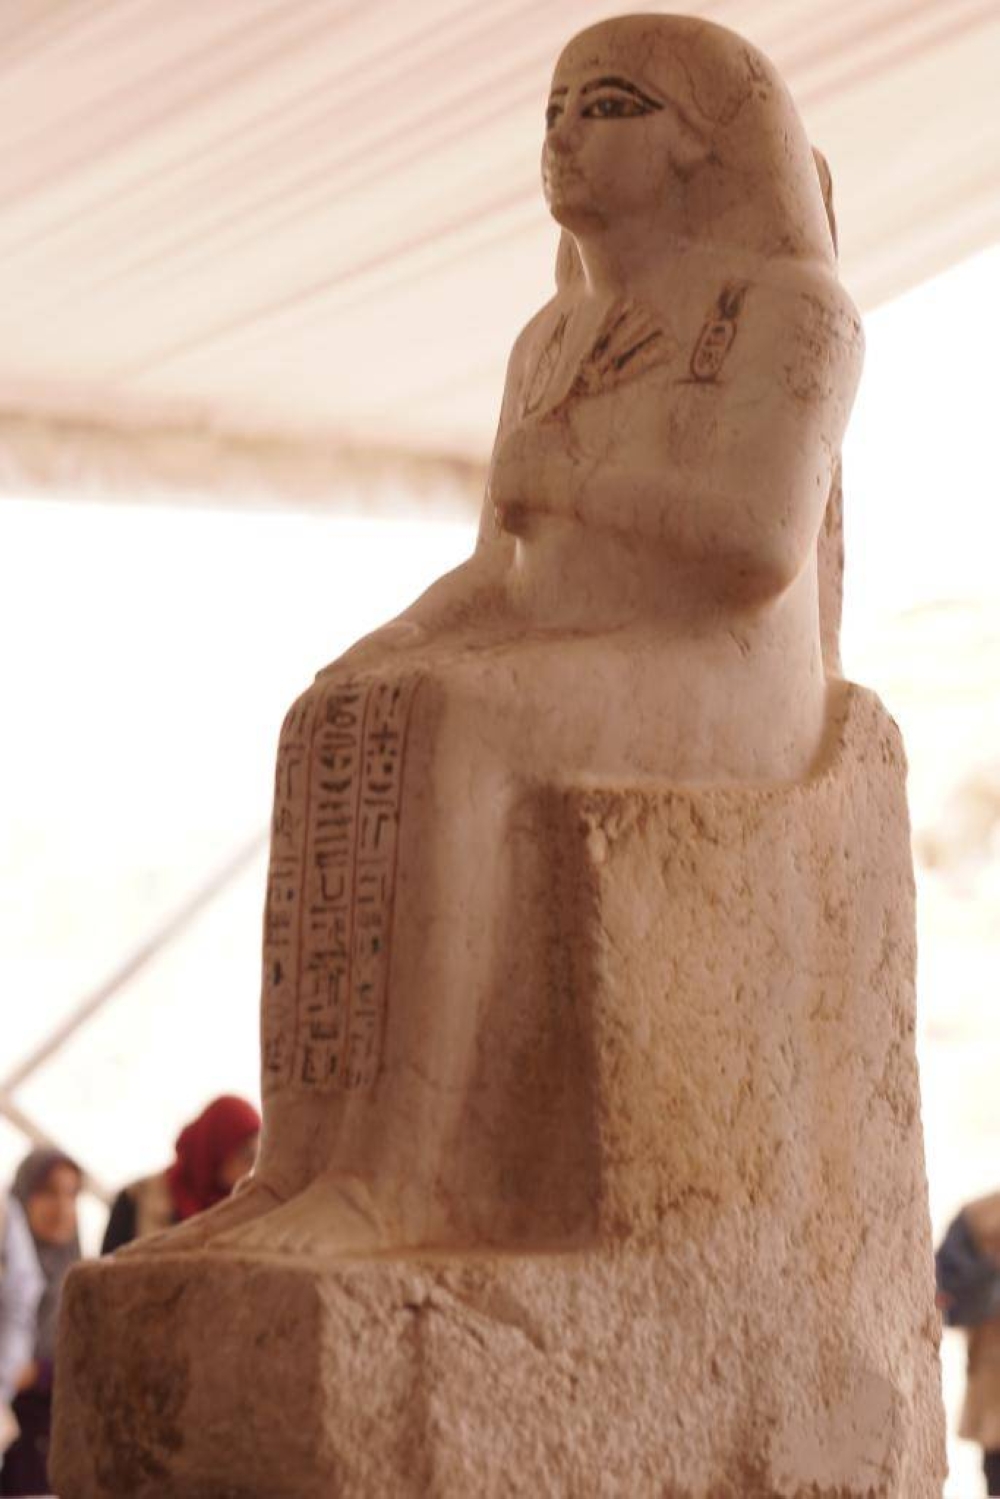 بعد الاكتشاف الآثري الجديد في مصر.. العالم يقترب من كشف سر تحنيط المصريين القدماء